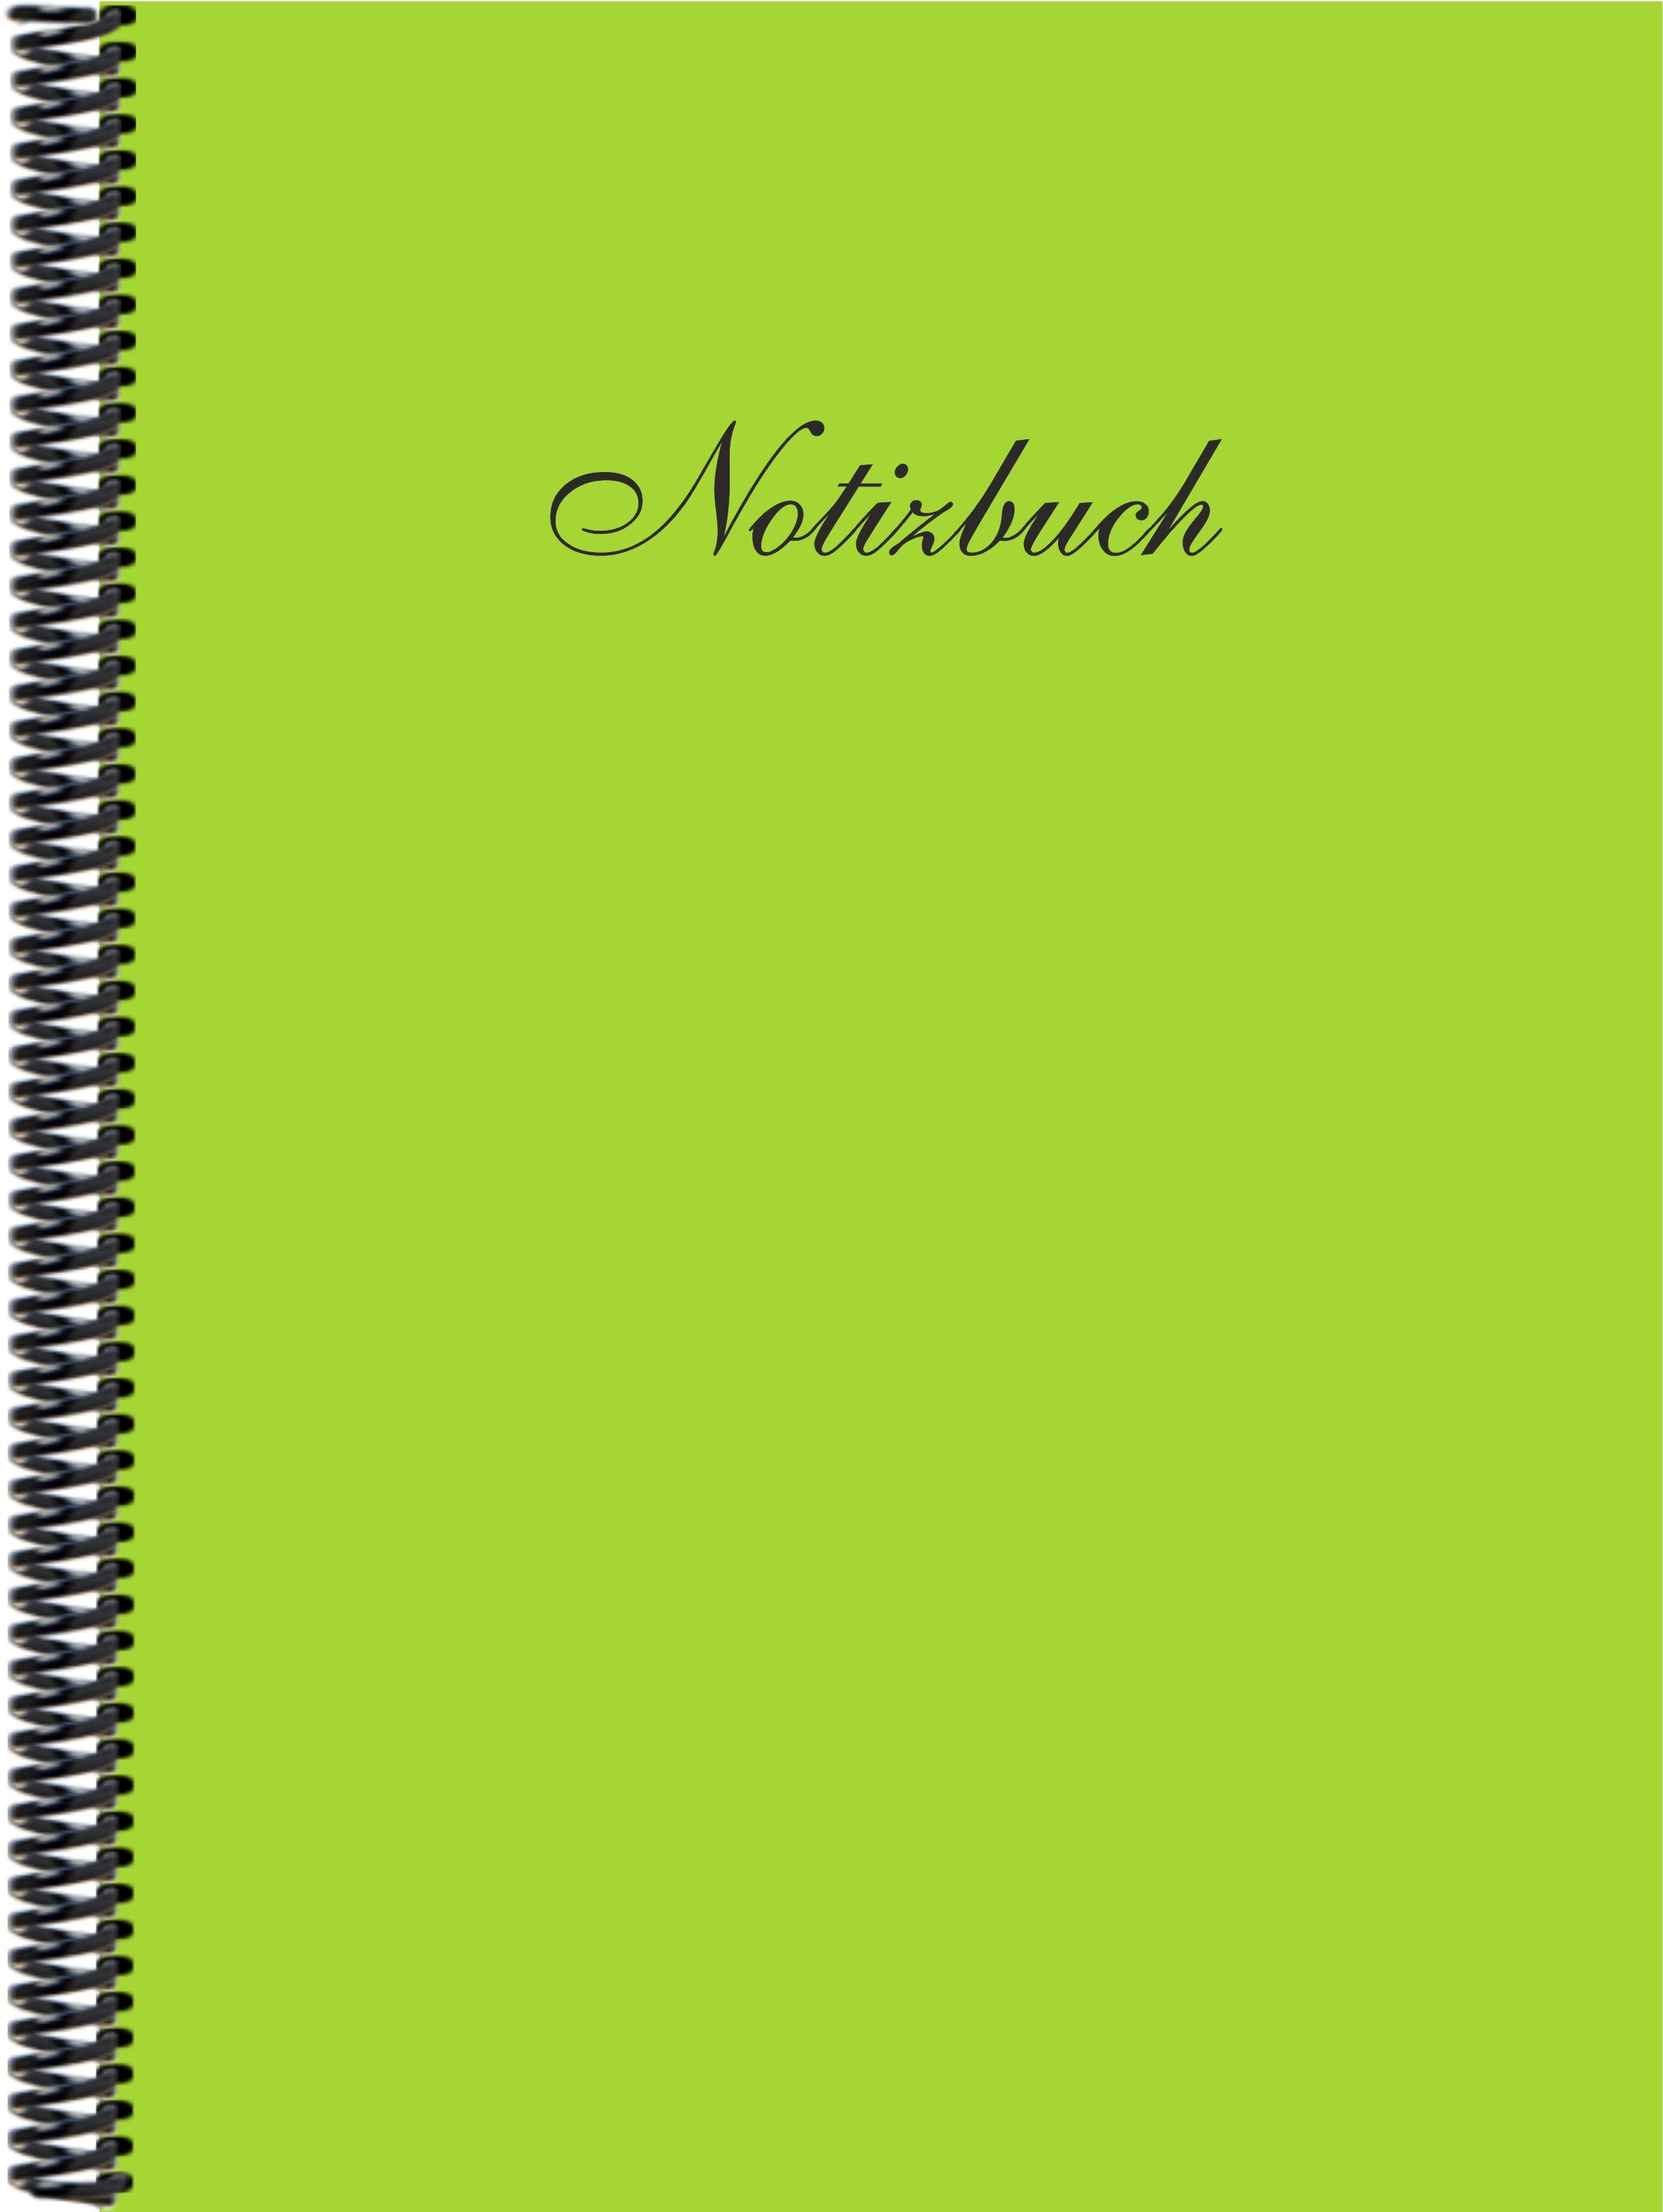 Gmbh Notizbuch liniert, in maigrün Notizbuch der Verlag E&Z DINA4 Trendfarbe